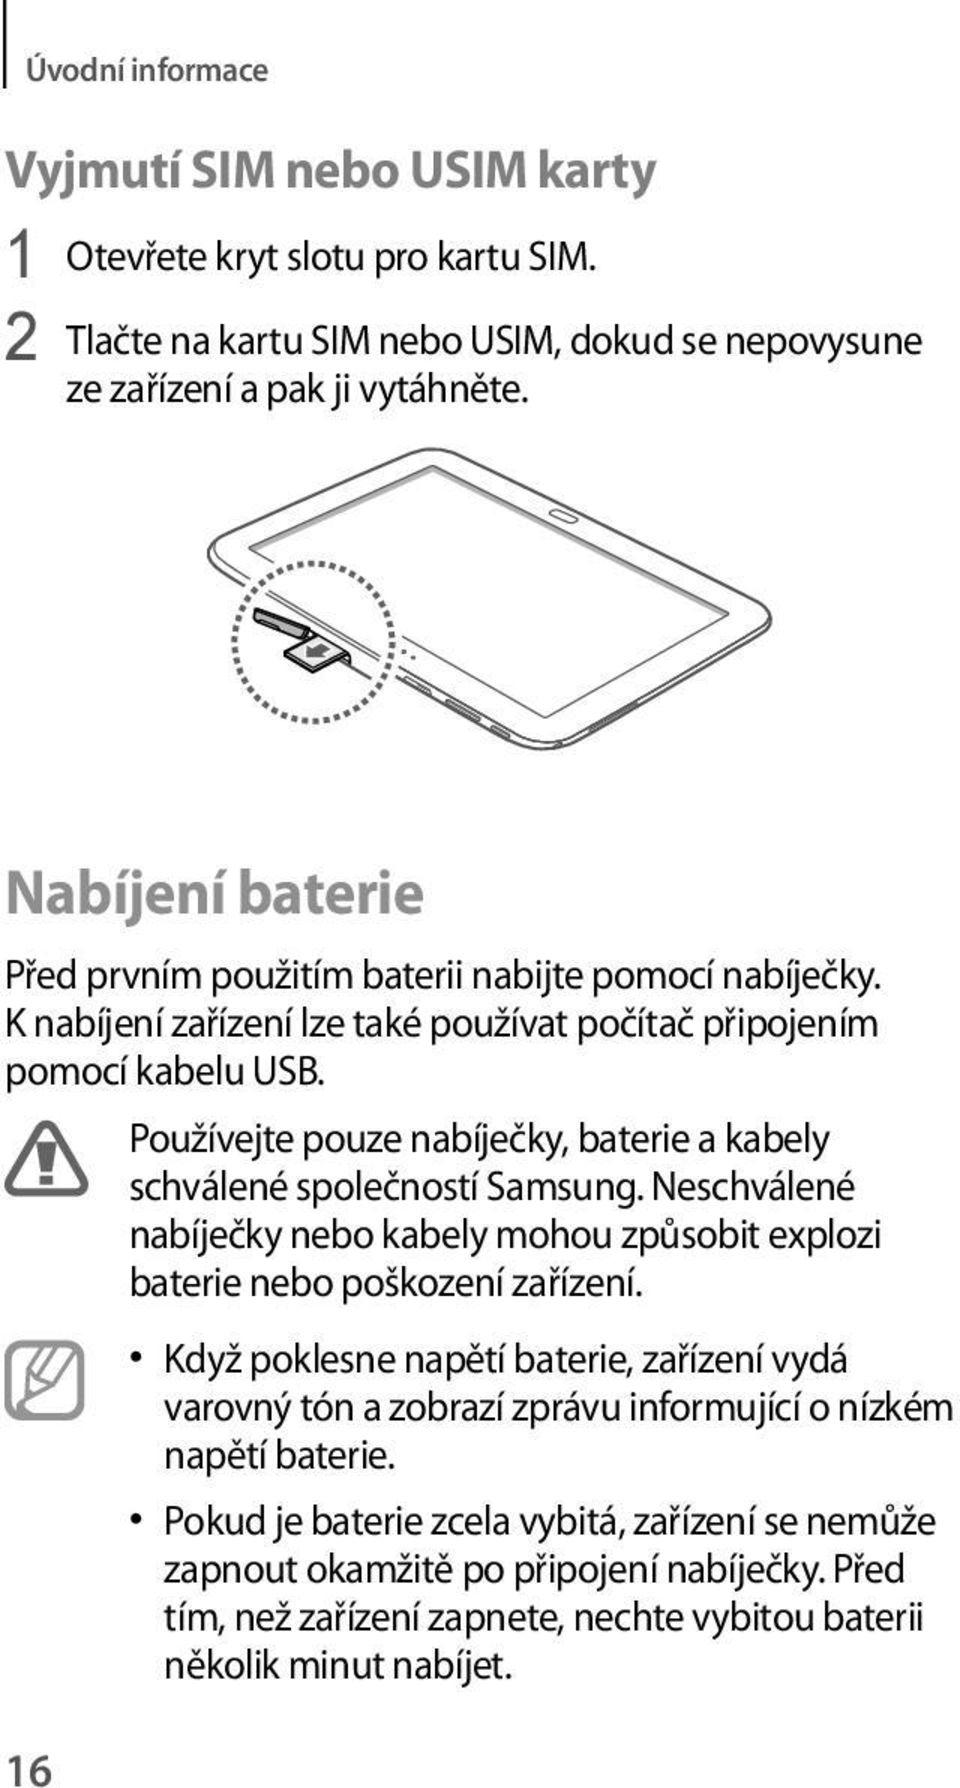 16 Používejte pouze nabíječky, baterie a kabely schválené společností Samsung. Neschválené nabíječky nebo kabely mohou způsobit explozi baterie nebo poškození zařízení.